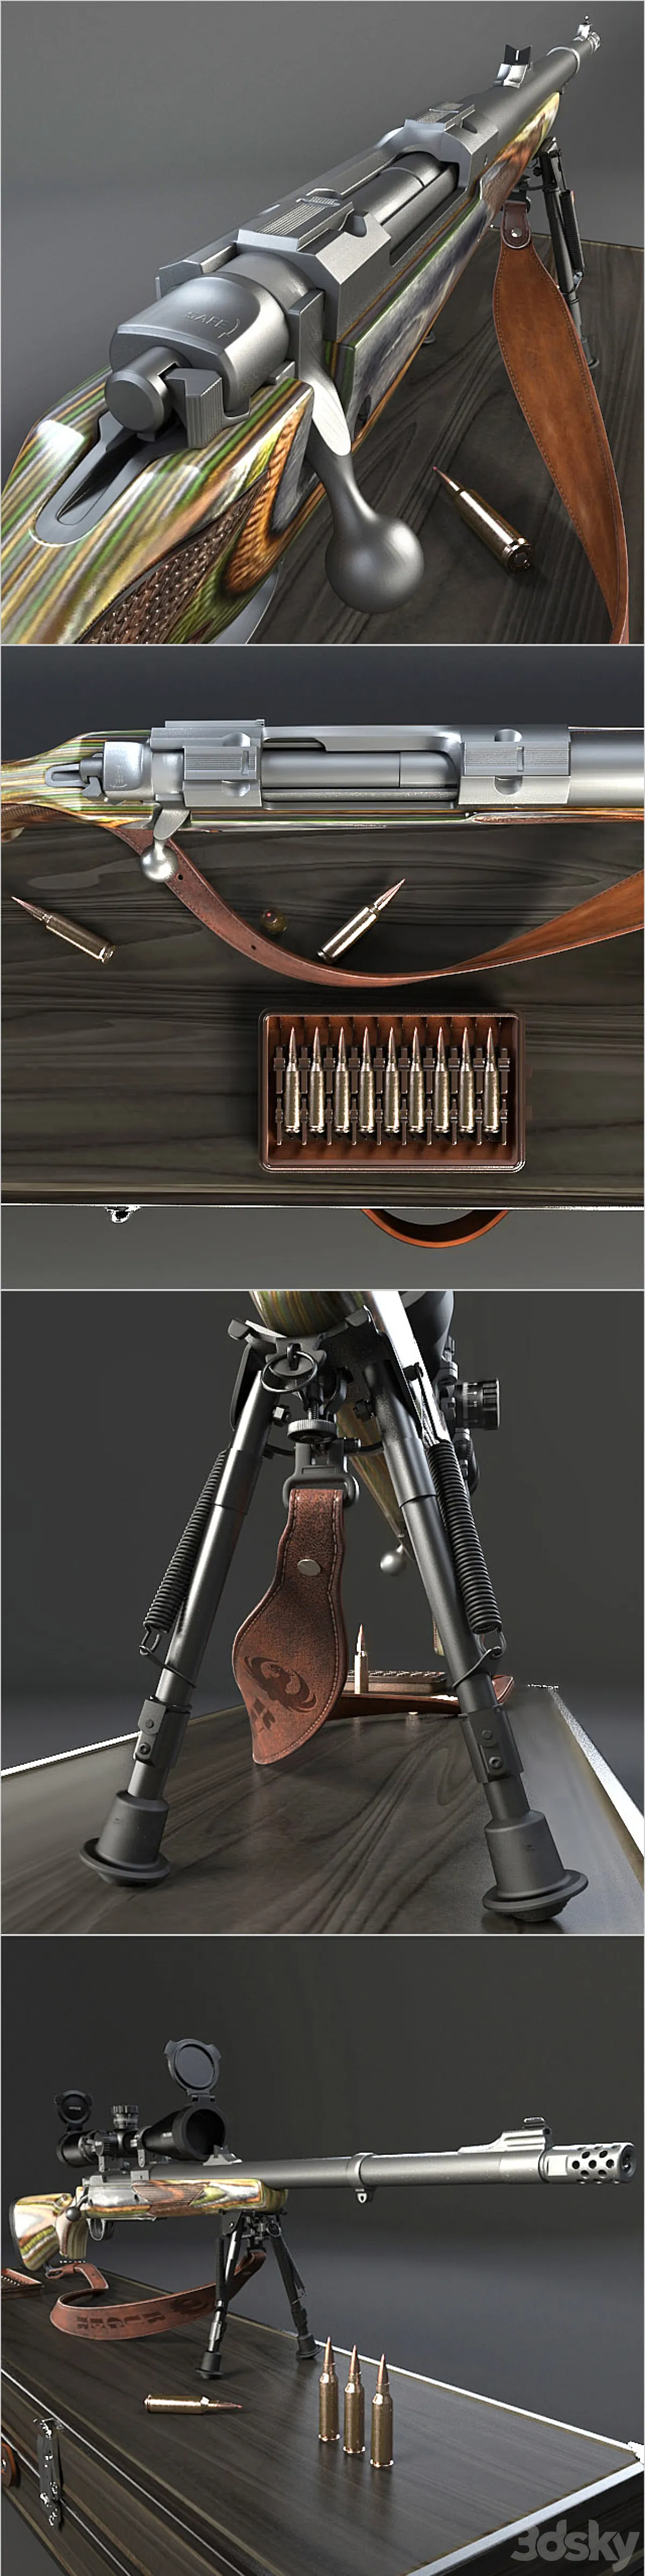 مدل سه بعدی اسلحه 2 - 6